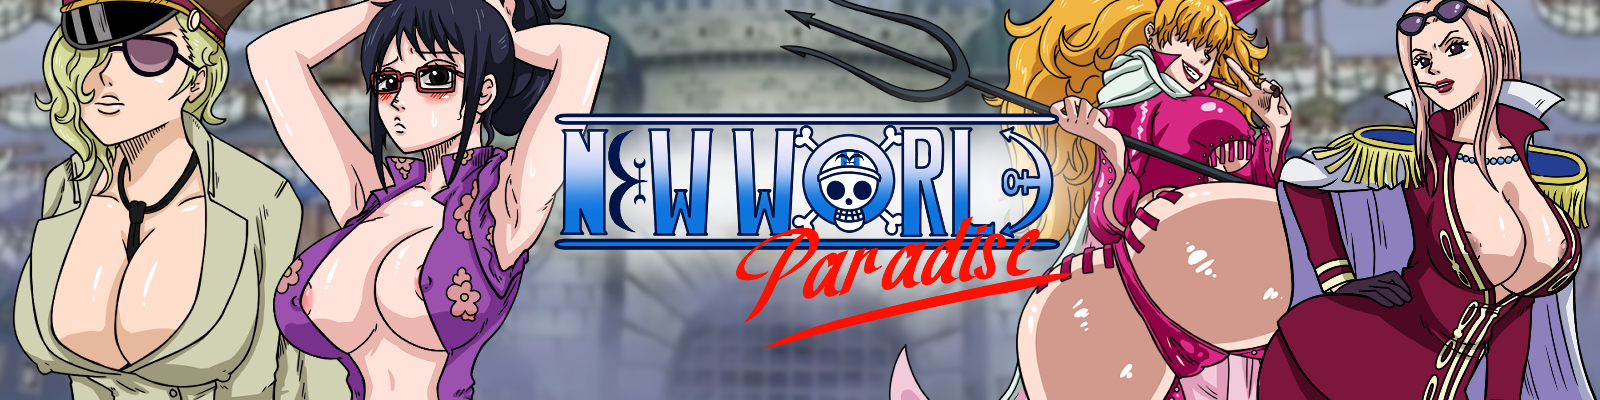 New World Paradise main image